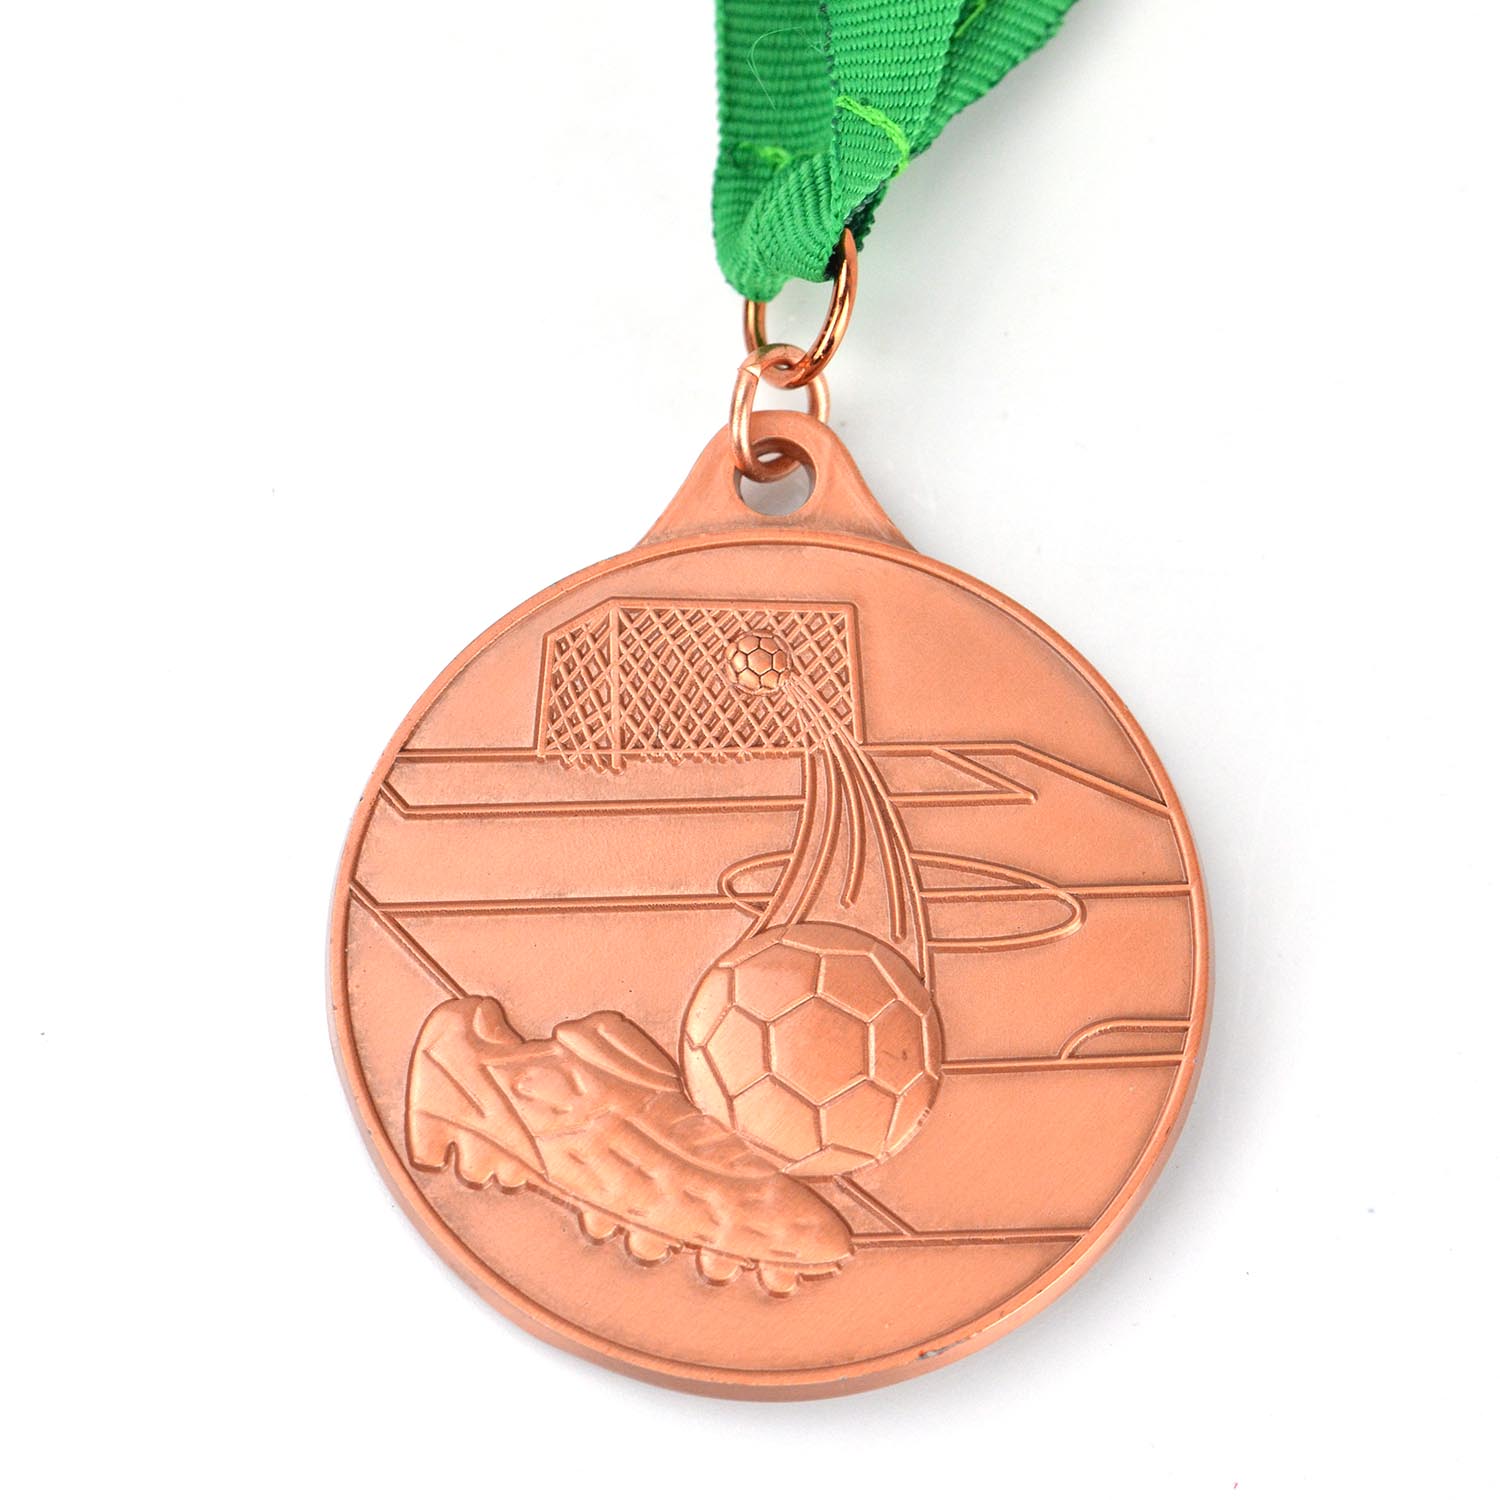 Fabrika Üretimi Hatıra Altın Gümüş Bakır Metal Futbol Voleybol Basketbol Özel Spor Madalyaları Madalyon (9)